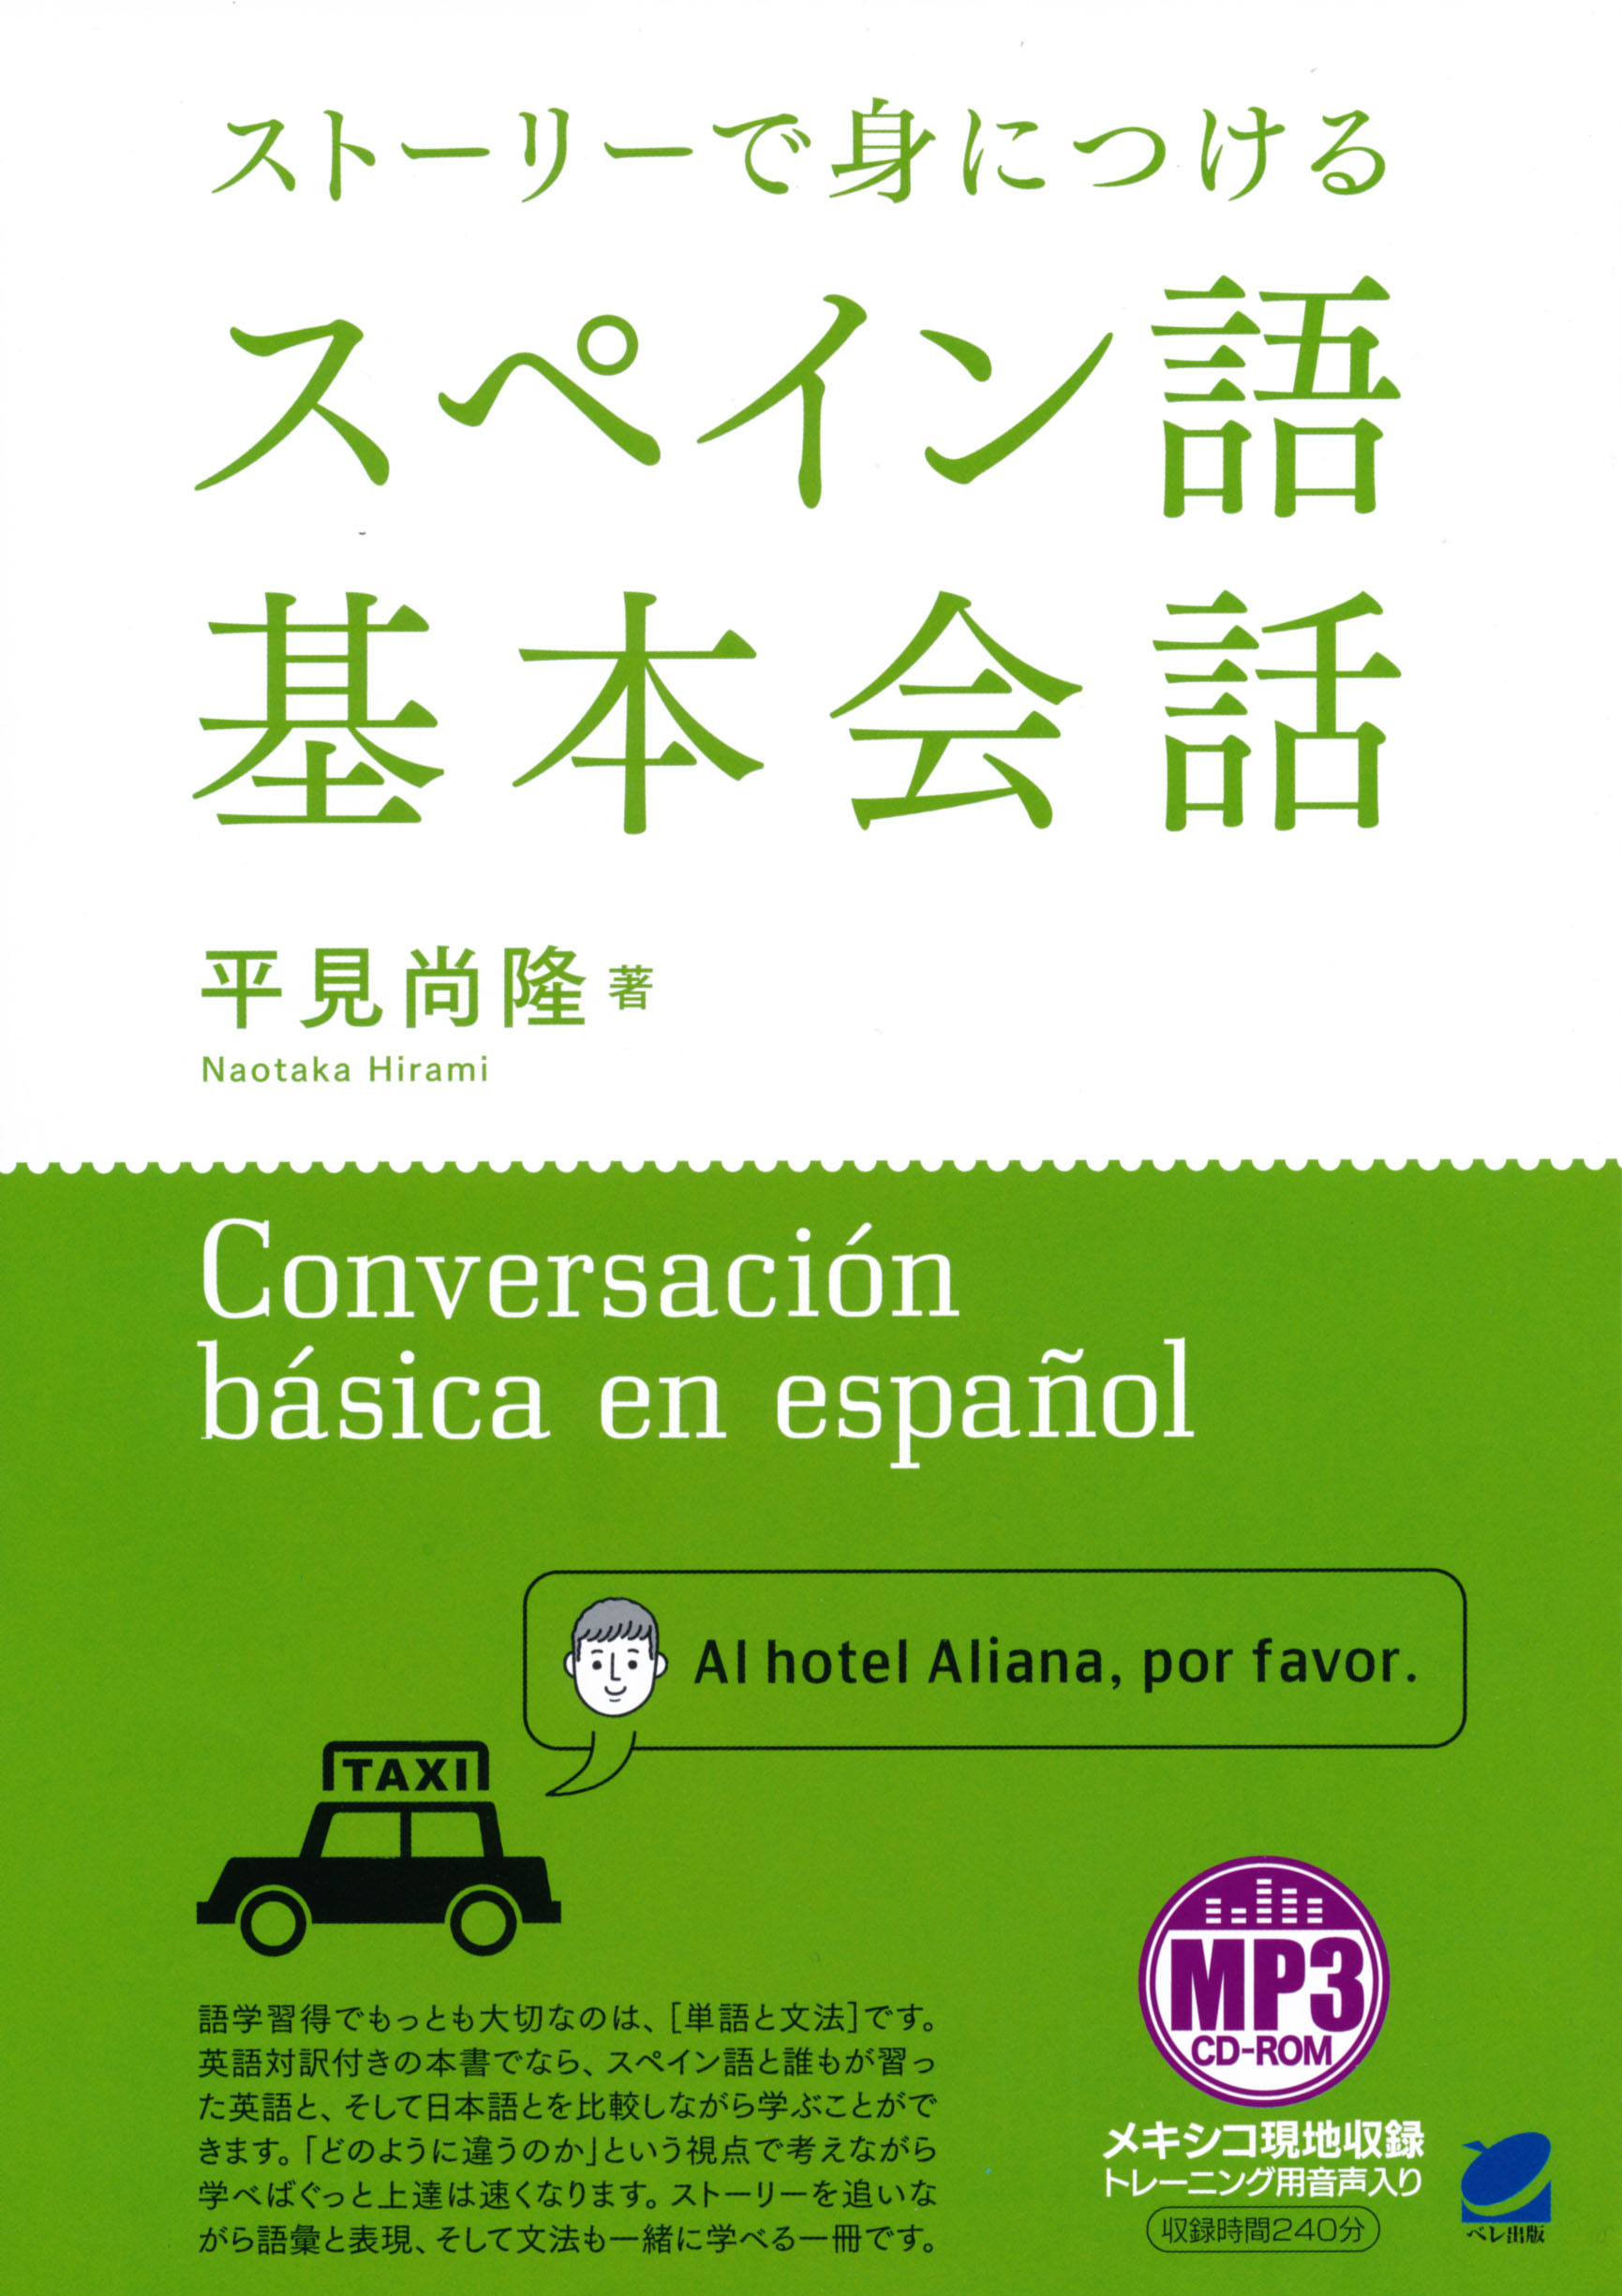 ストーリーで身につけるスペイン語基本会話 MP3CD-ROM付き - いつも、学ぶ人の近くに【ベレ出版】